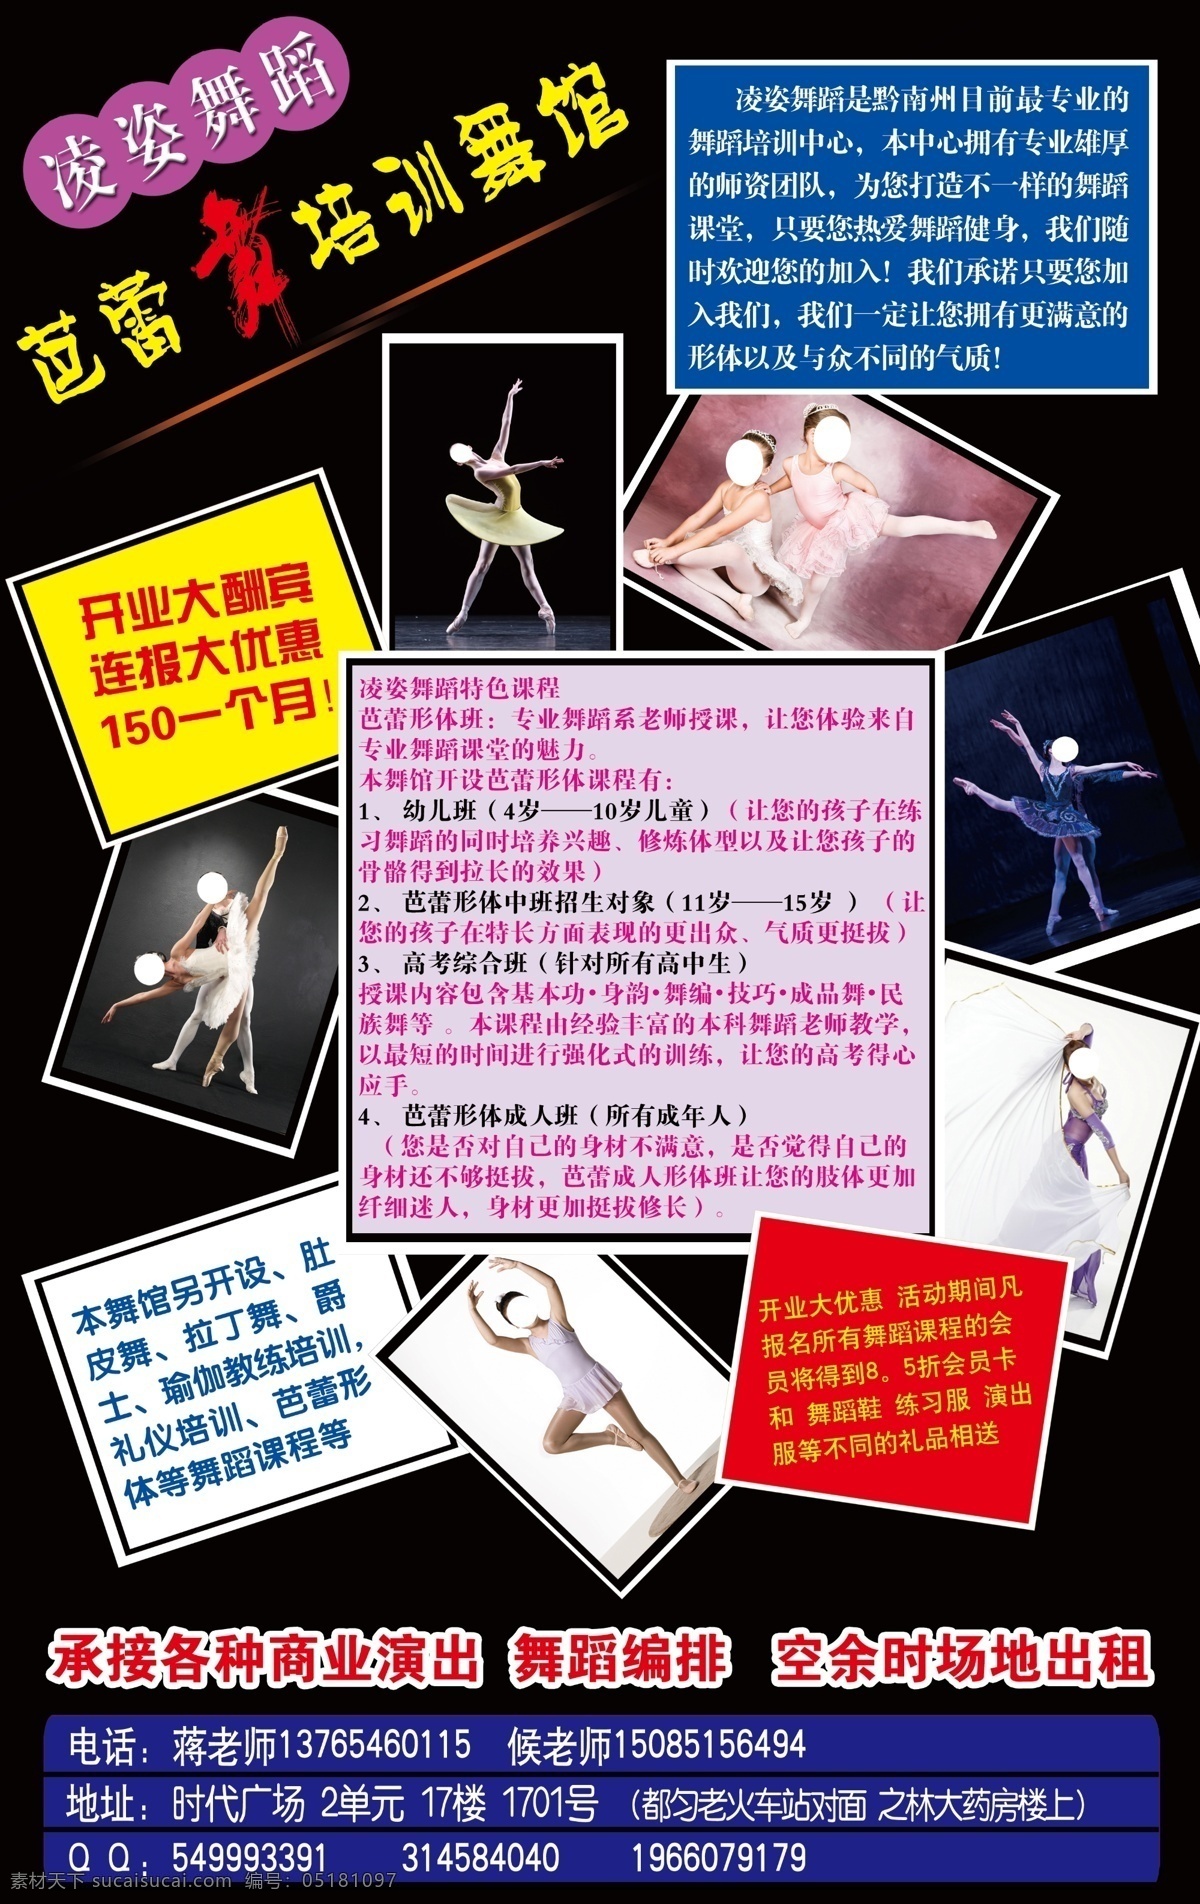 舞蹈 培训 海报 广告设计模板 花纹 舞蹈培训 舞蹈培训海报 线条 小孩 源文件 招生海报 企业文化海报